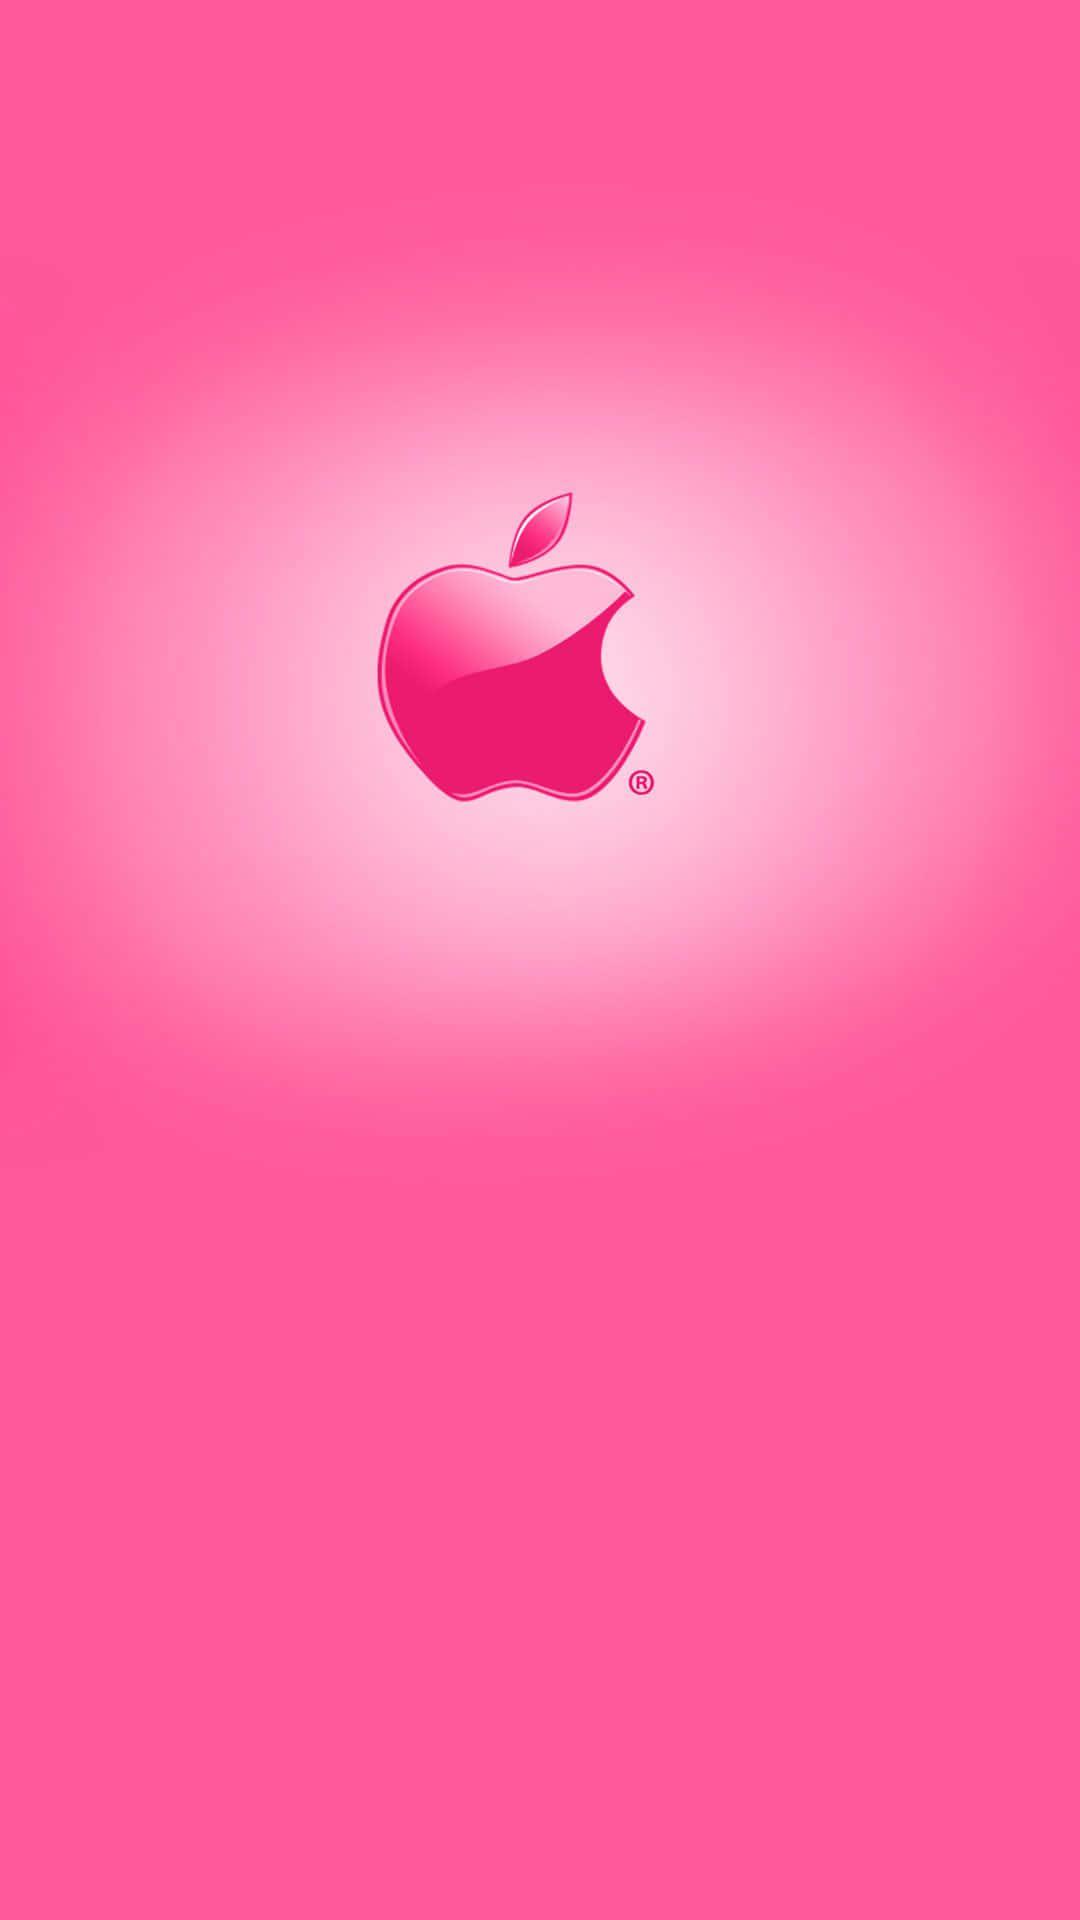 Glanzendesrosa Logo (logo In Pink) - Atemberaubendes Apple Hd (hochauflösend) Für Das Iphone Wallpaper